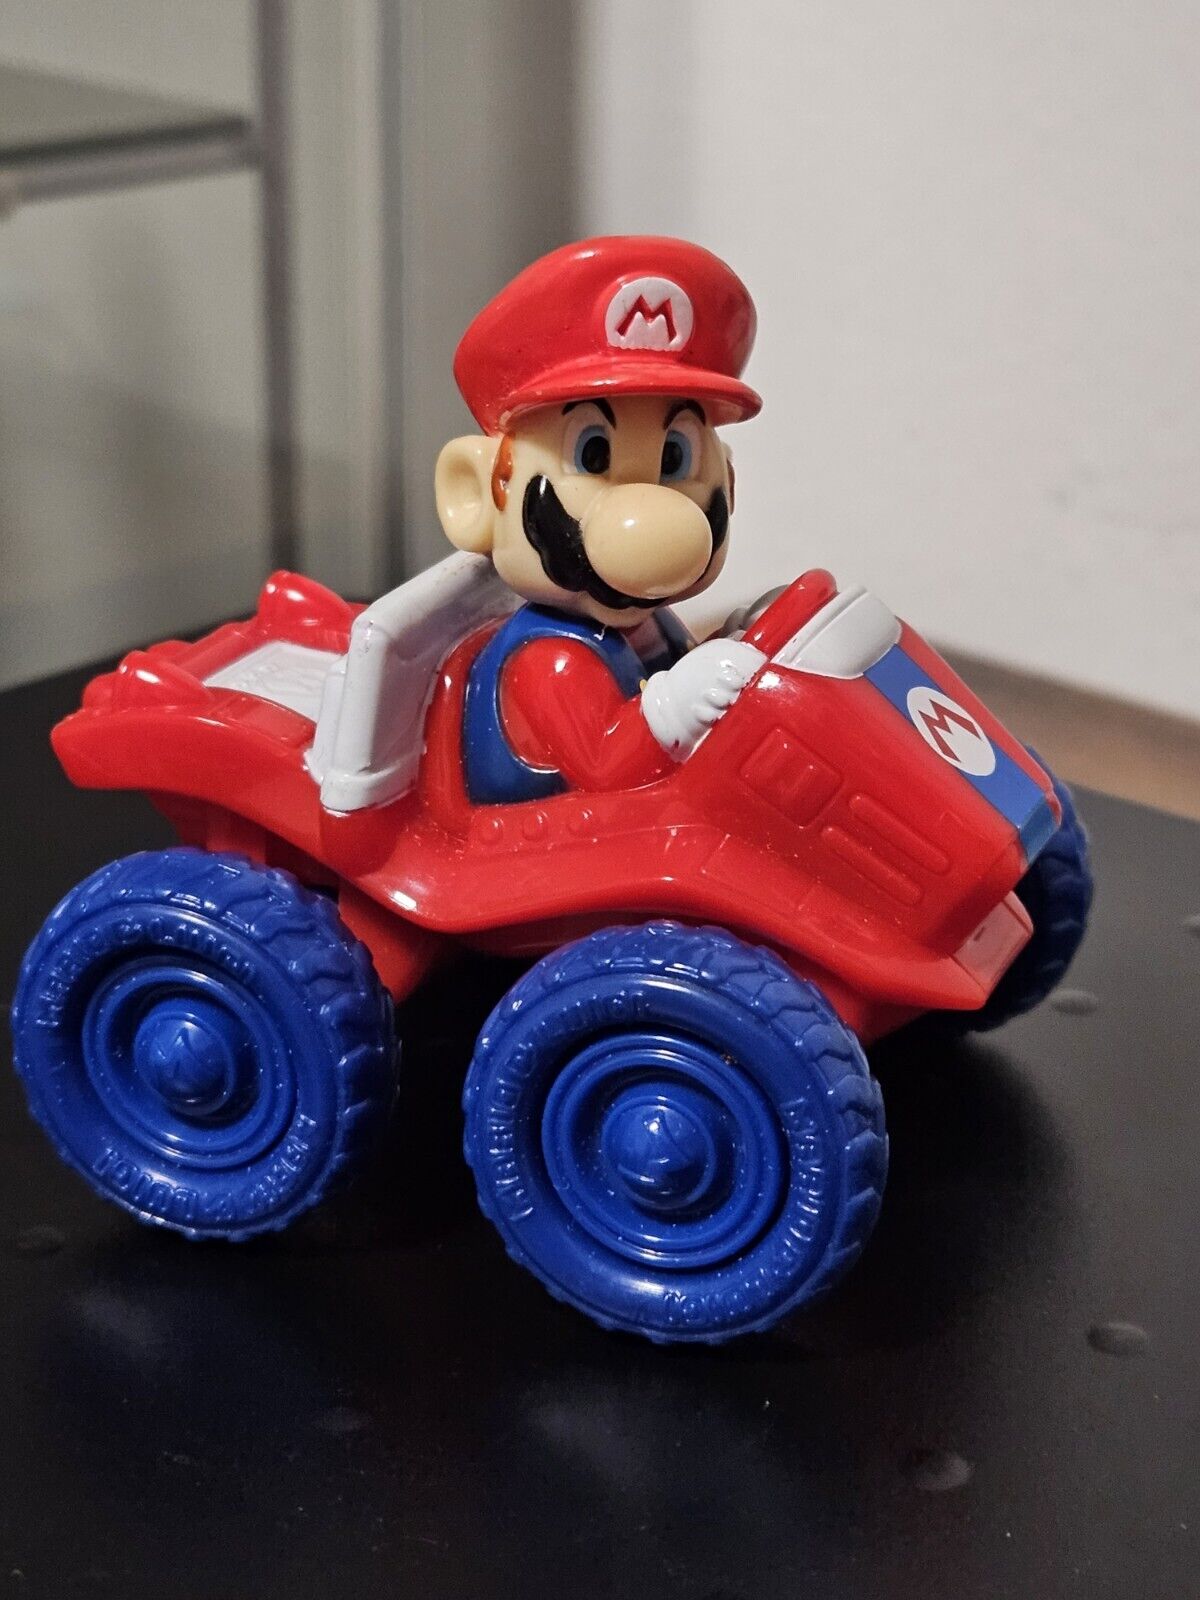 Vintage Nintendo Super Mario Bros. Mario Plastic Figure With Vehicle Toy EUC 